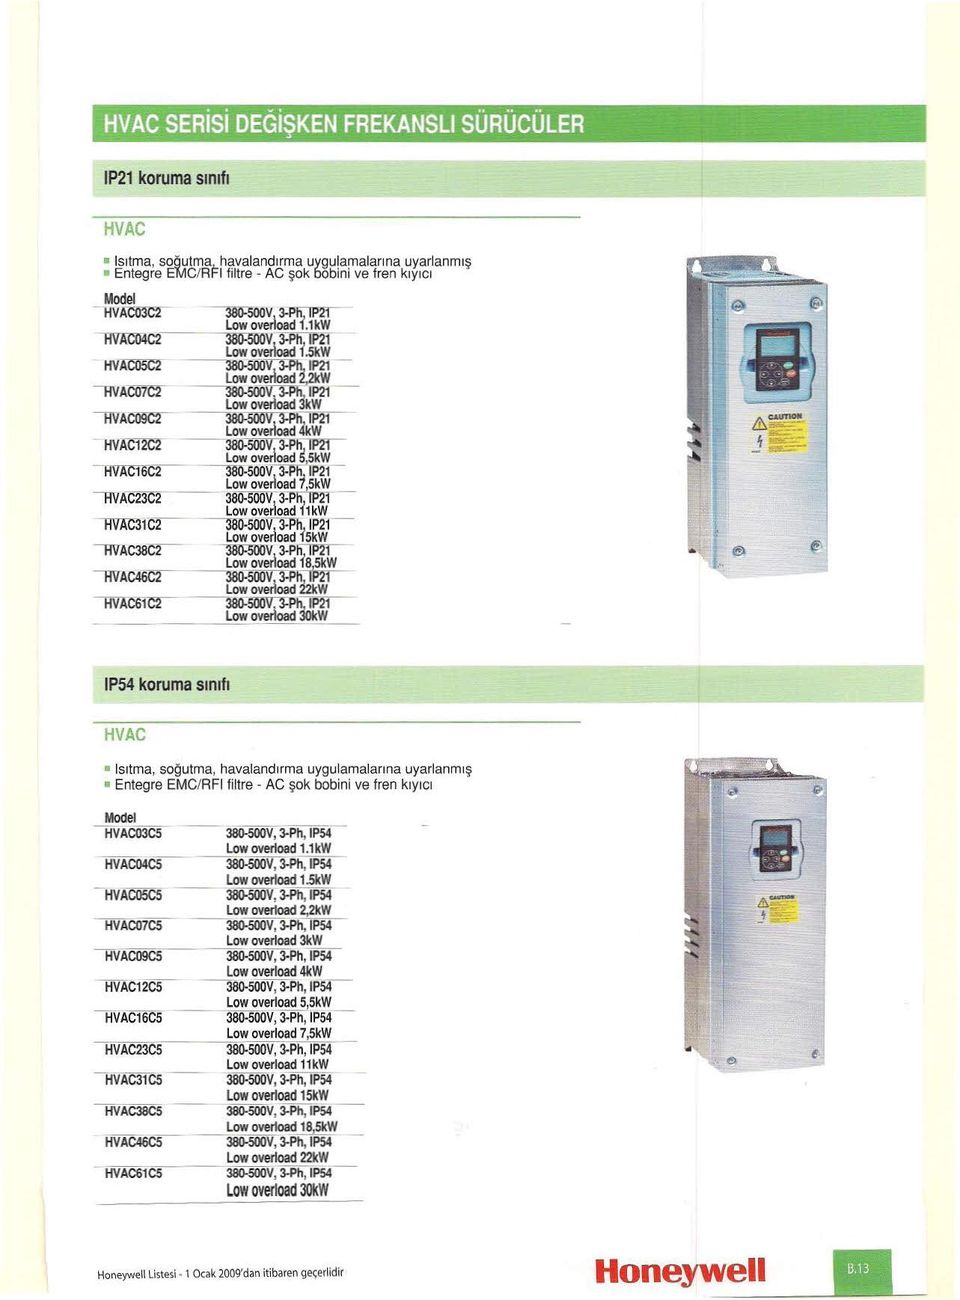 IP54 koruma sınıfı HVAC ısıtma, soöuıme, havalandırma uygulamalarına uyarlanmış Entegre EMe/RFI filtre - AC şok bobini ve fren kıyıcı HVAC03C5 -- 38O-5ODV, 3-Ph, IPS4- Lowoverload1.